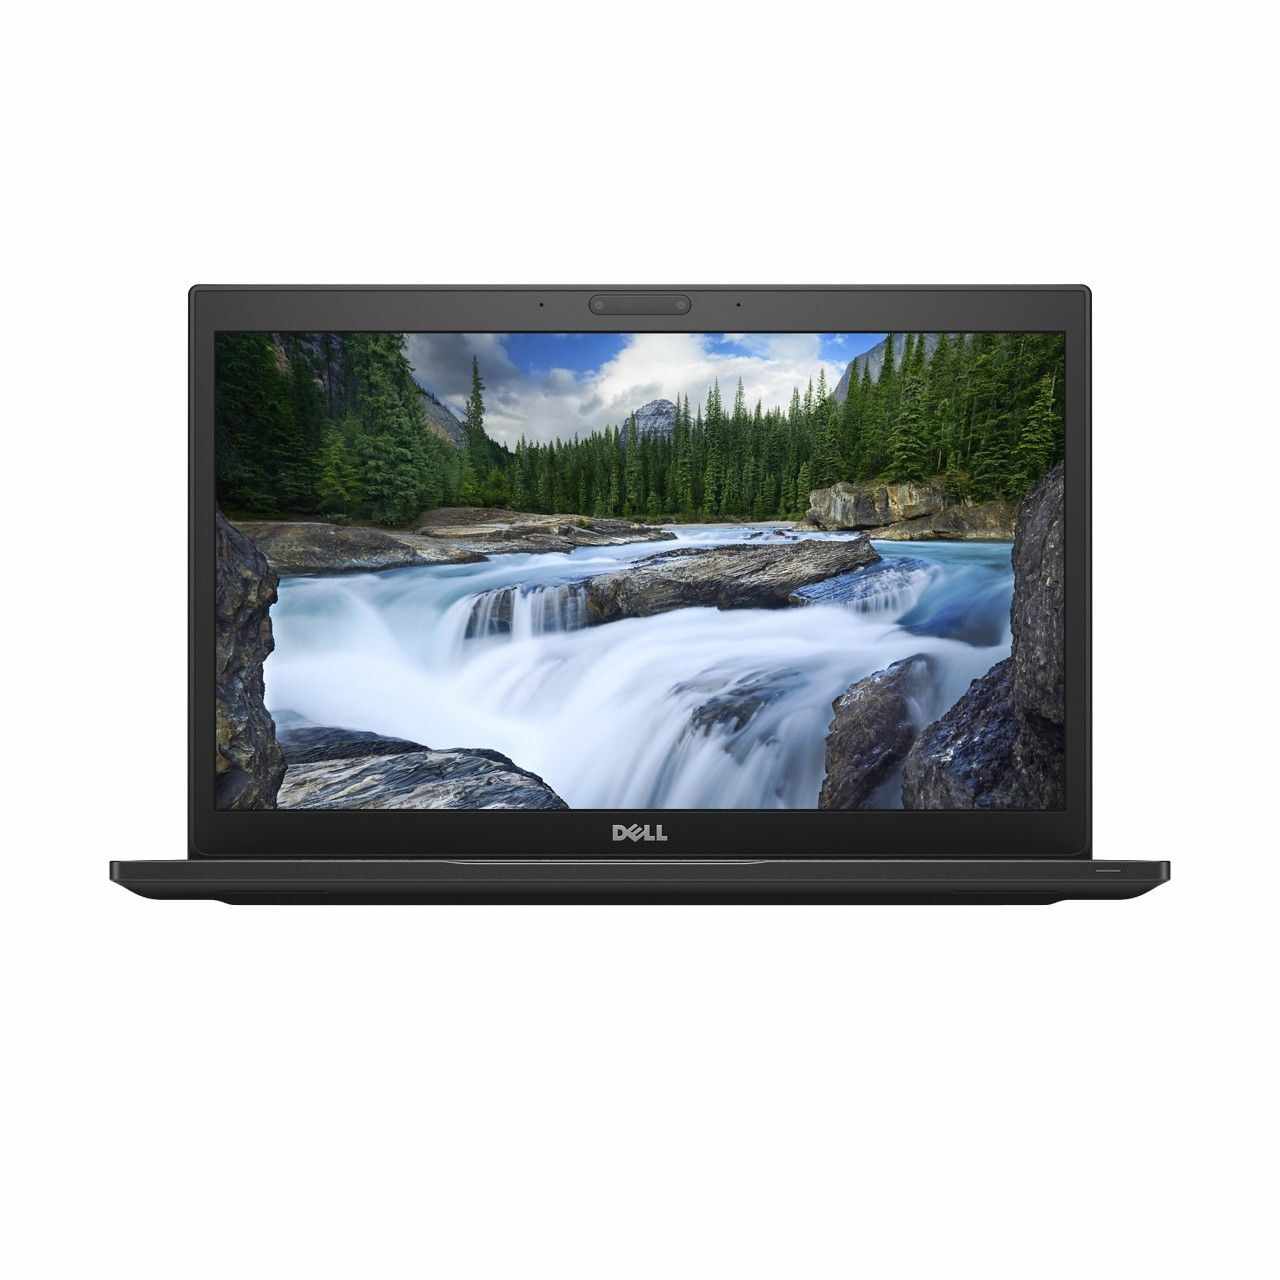 Laptop DELL, LATITUDE 7490, Intel Core i5-8350U, 1.70 GHz, HDD: 128 GB, RAM: 8 GB, webcam